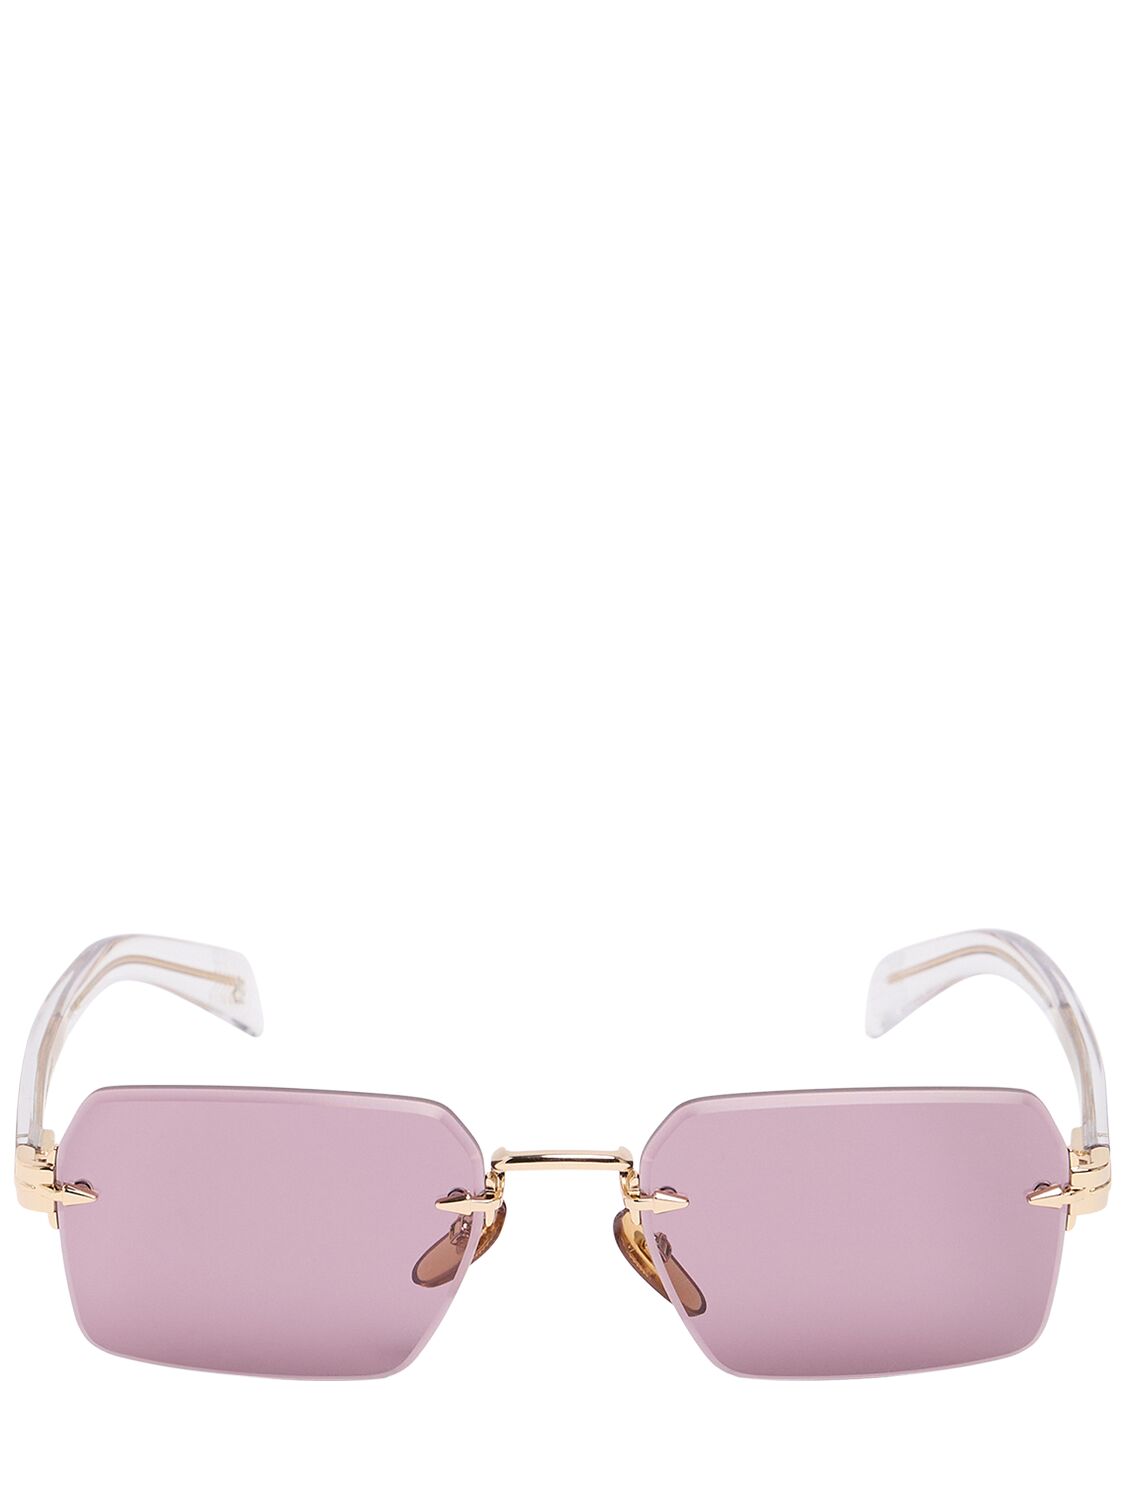 Db Eyewear By David Beckham Db Squared Metal Sunglasses In Gold/pink